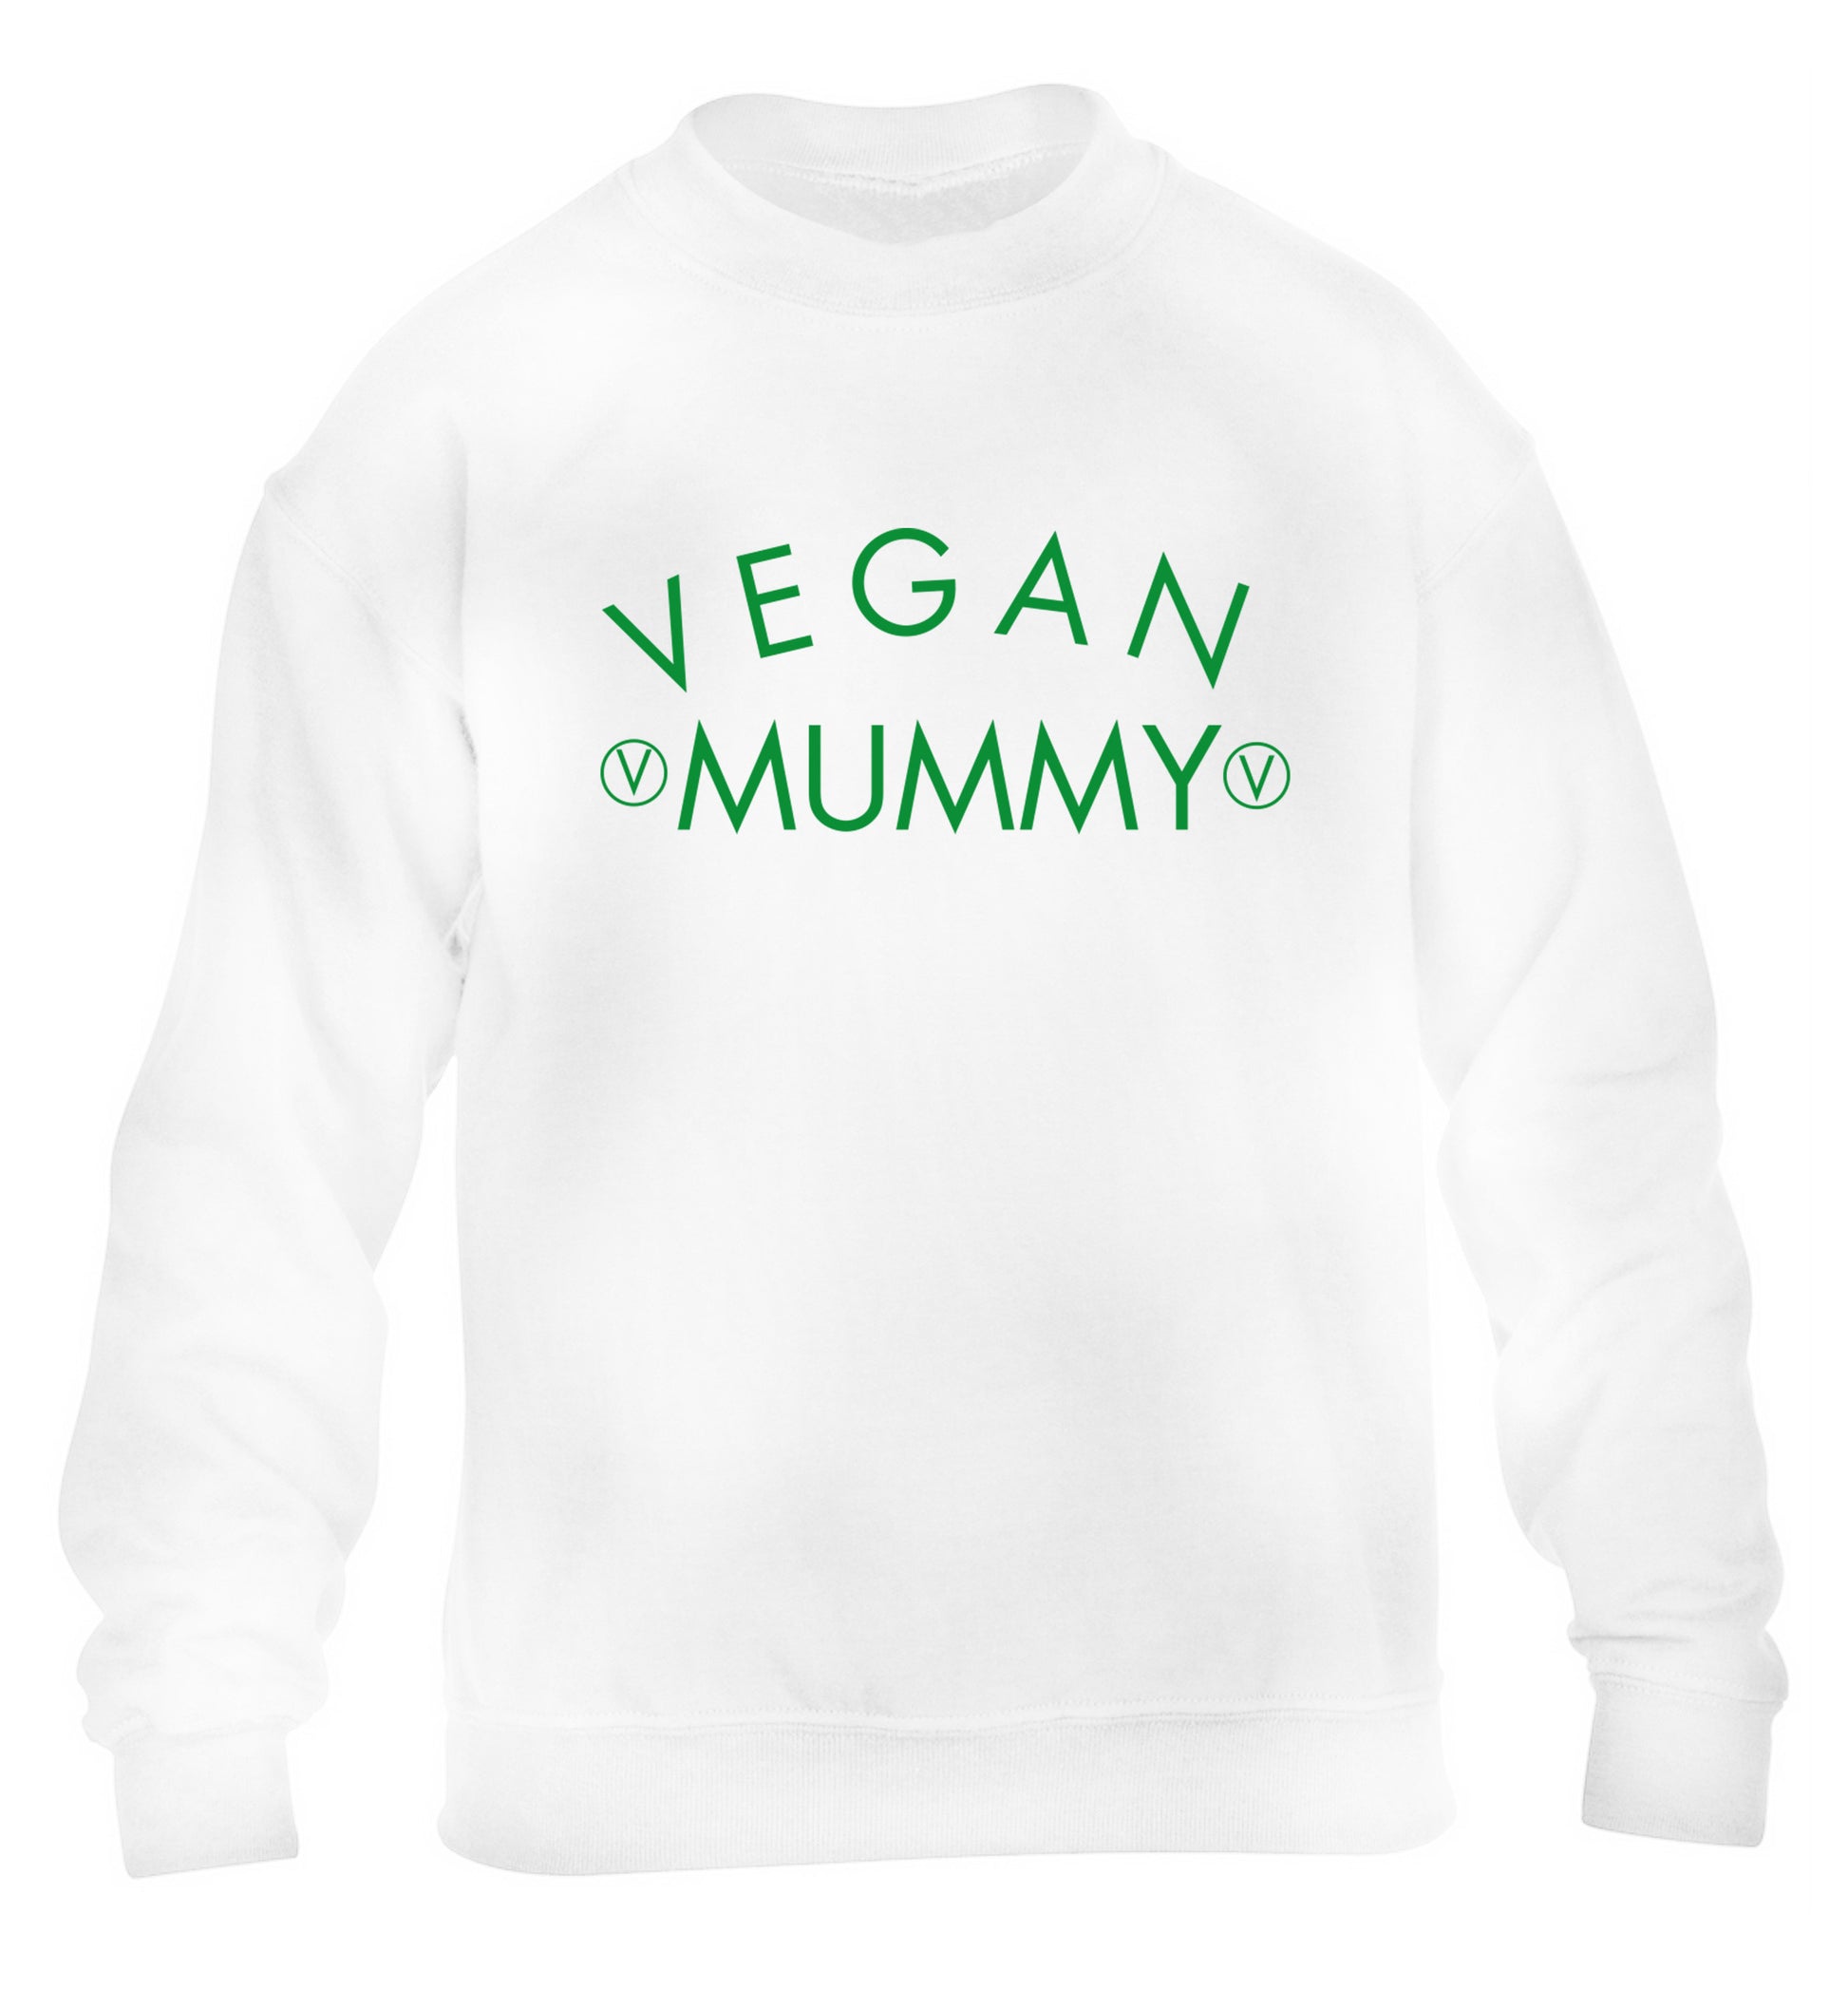 Vegan mummy children's white sweater 12-14 Years